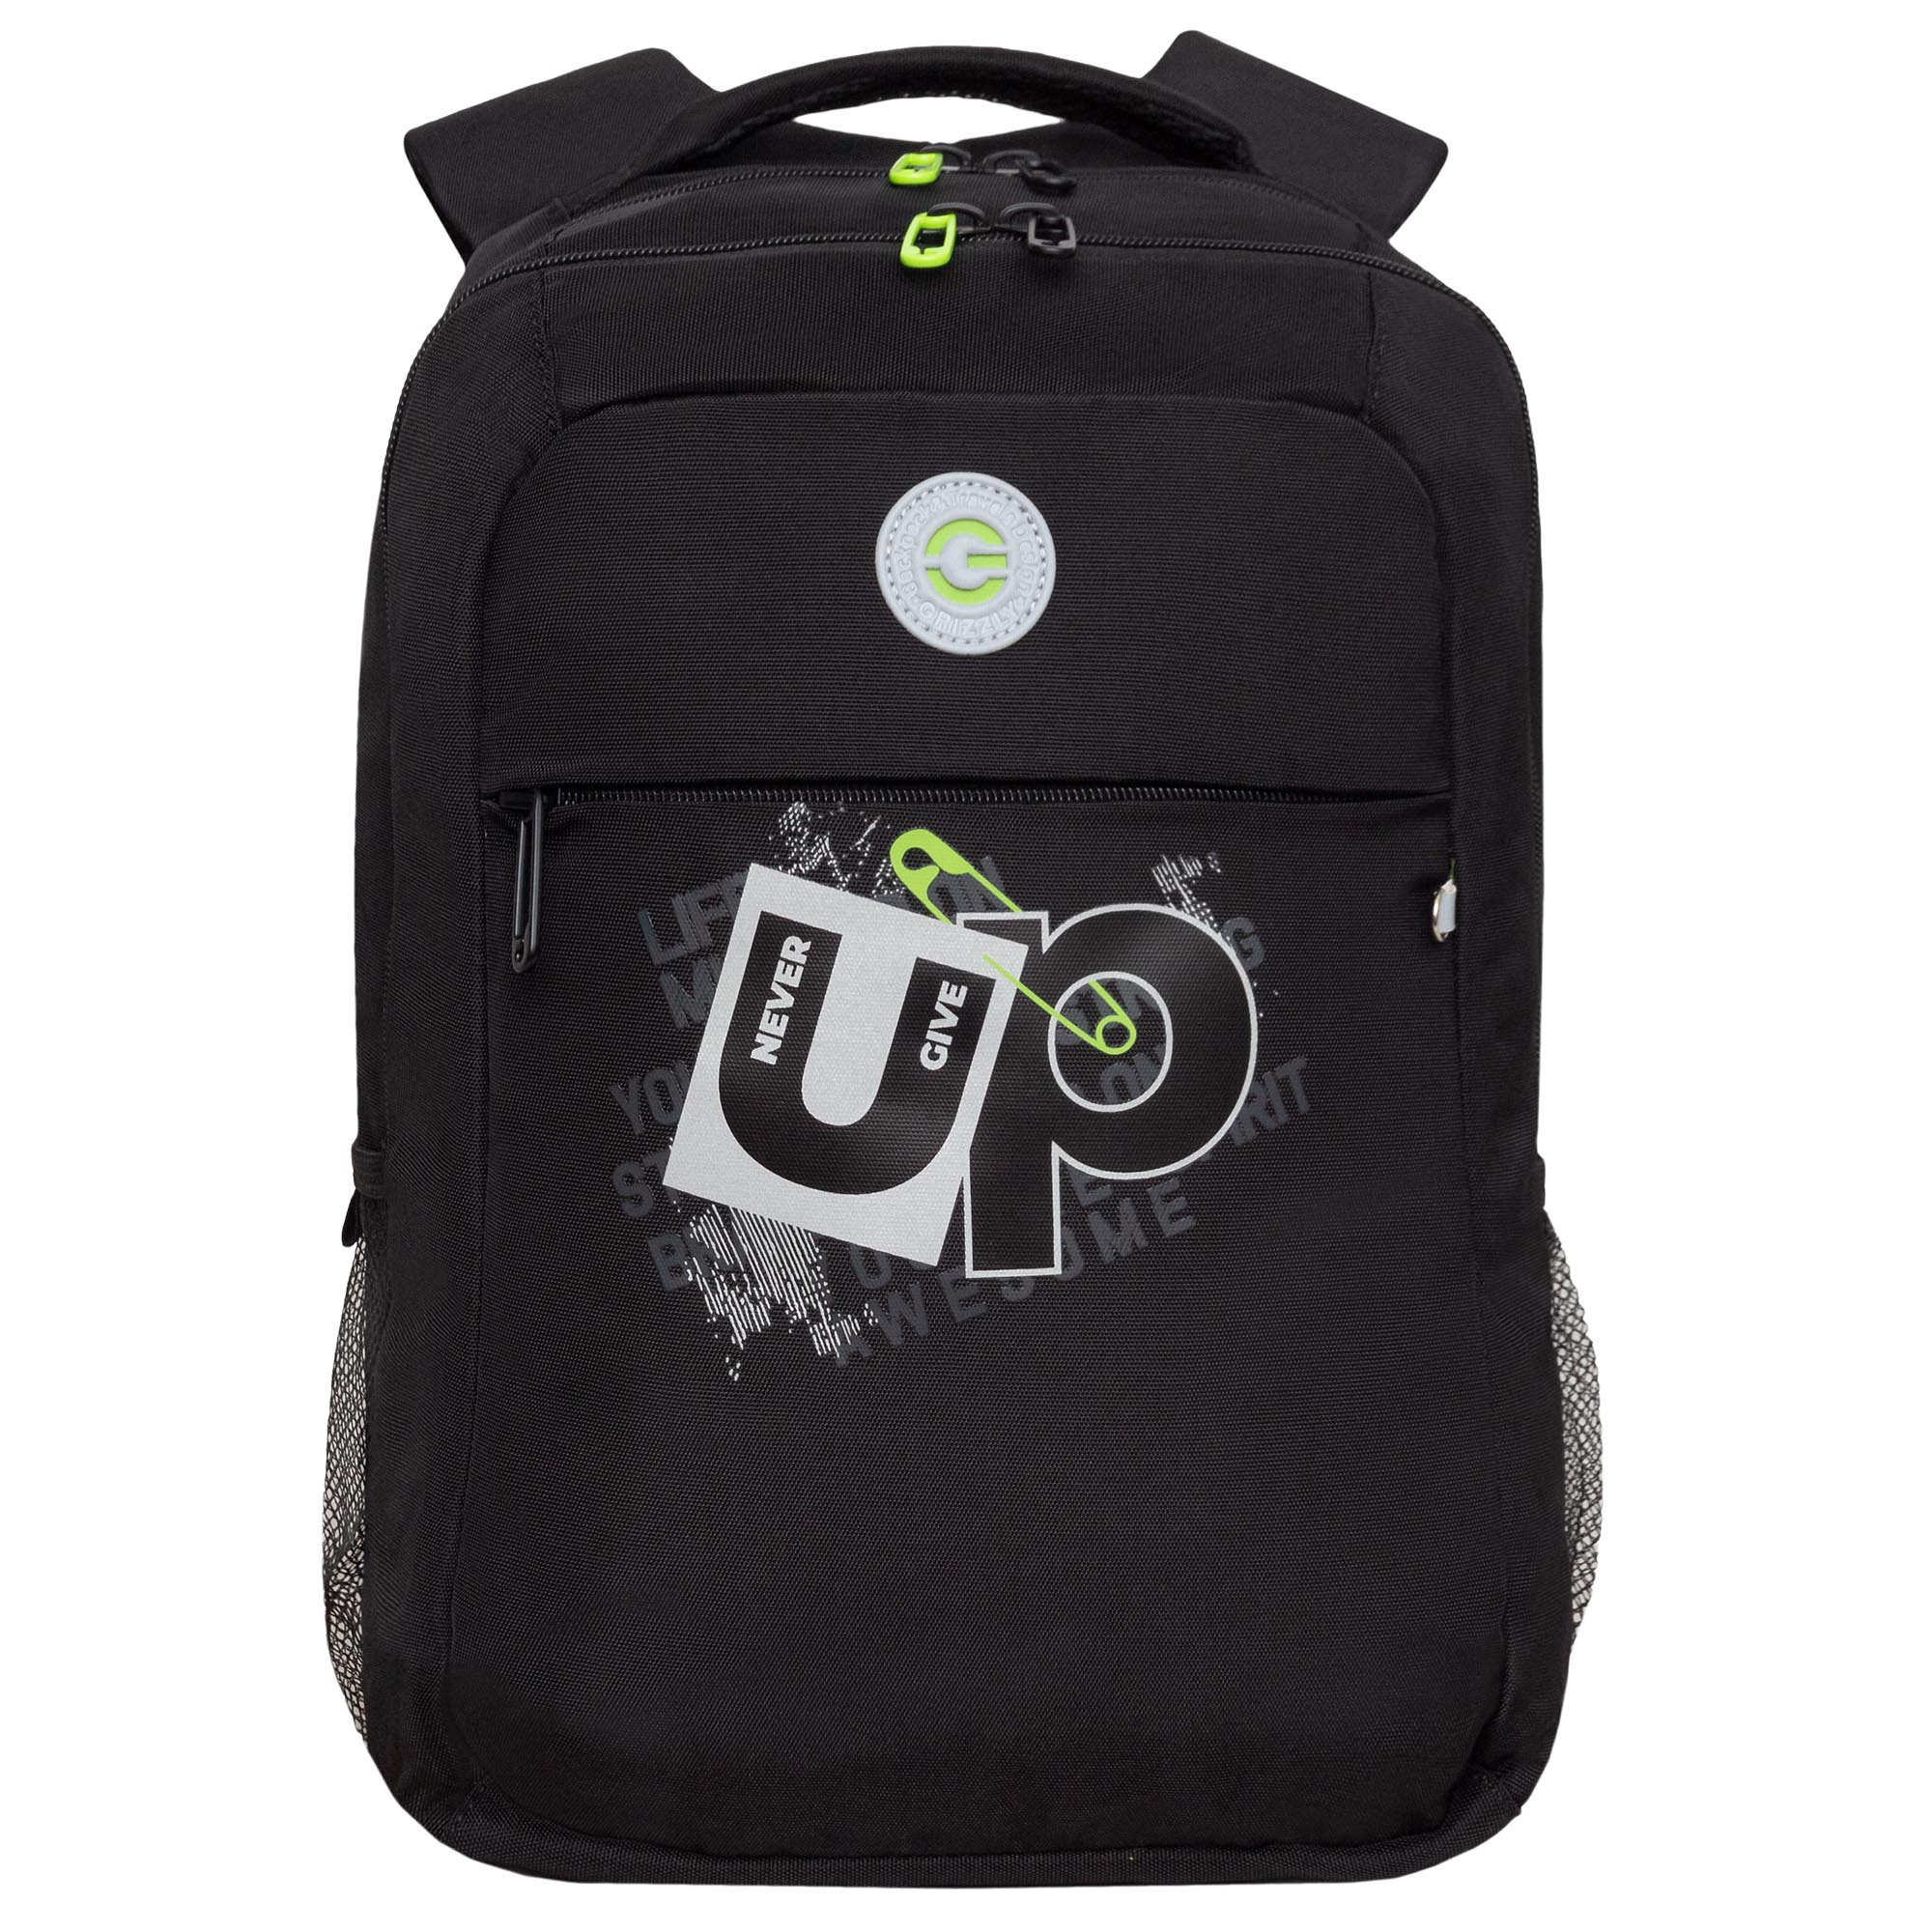 Рюкзак молодежный GRIZZLY с карманом для ноутбука 13, для мальчика, RB-456-3 1 рюкзак germanium upgrade 47х31х18 см 2 отделения отд для ноутбука usb порт 271665